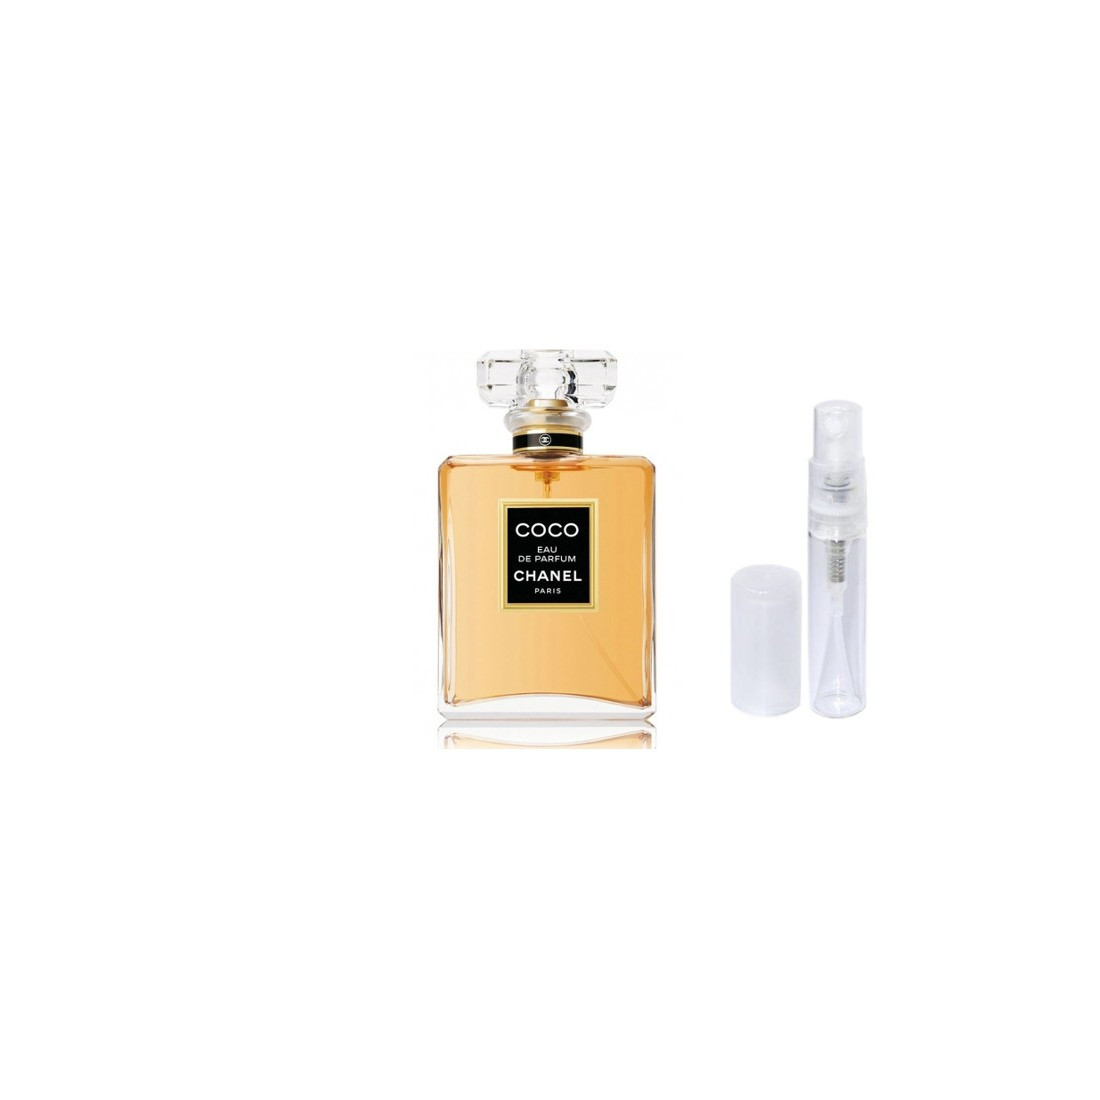 Perfum Chanel N5 50ml  Francuskie Perfumy